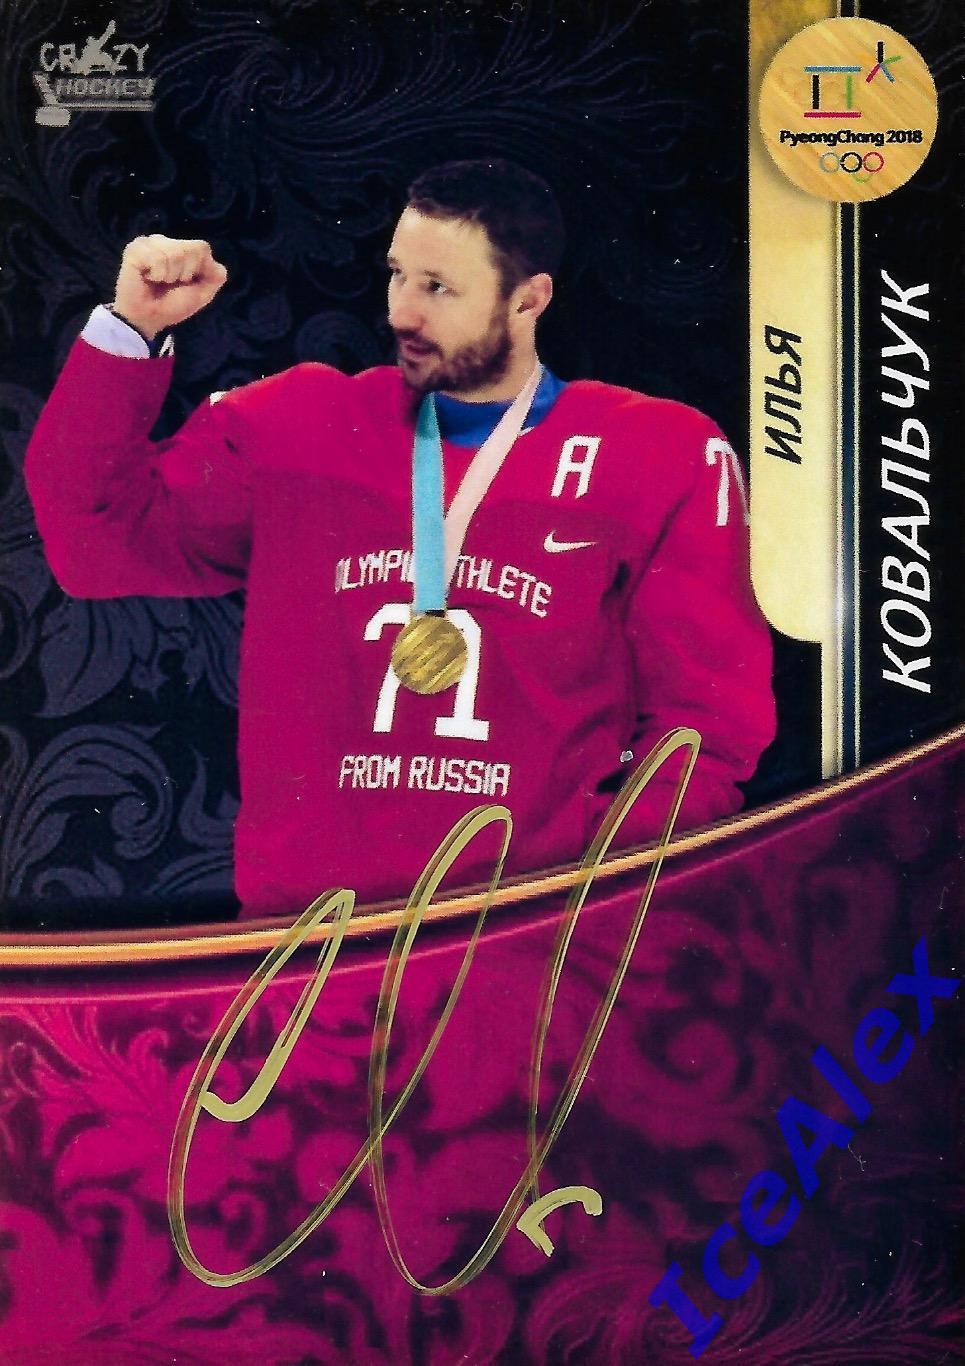 2018 Crazy Hockey, олимпиада Пхенчхана, России, автограф,#ОАР-01, Илья Ковальчук